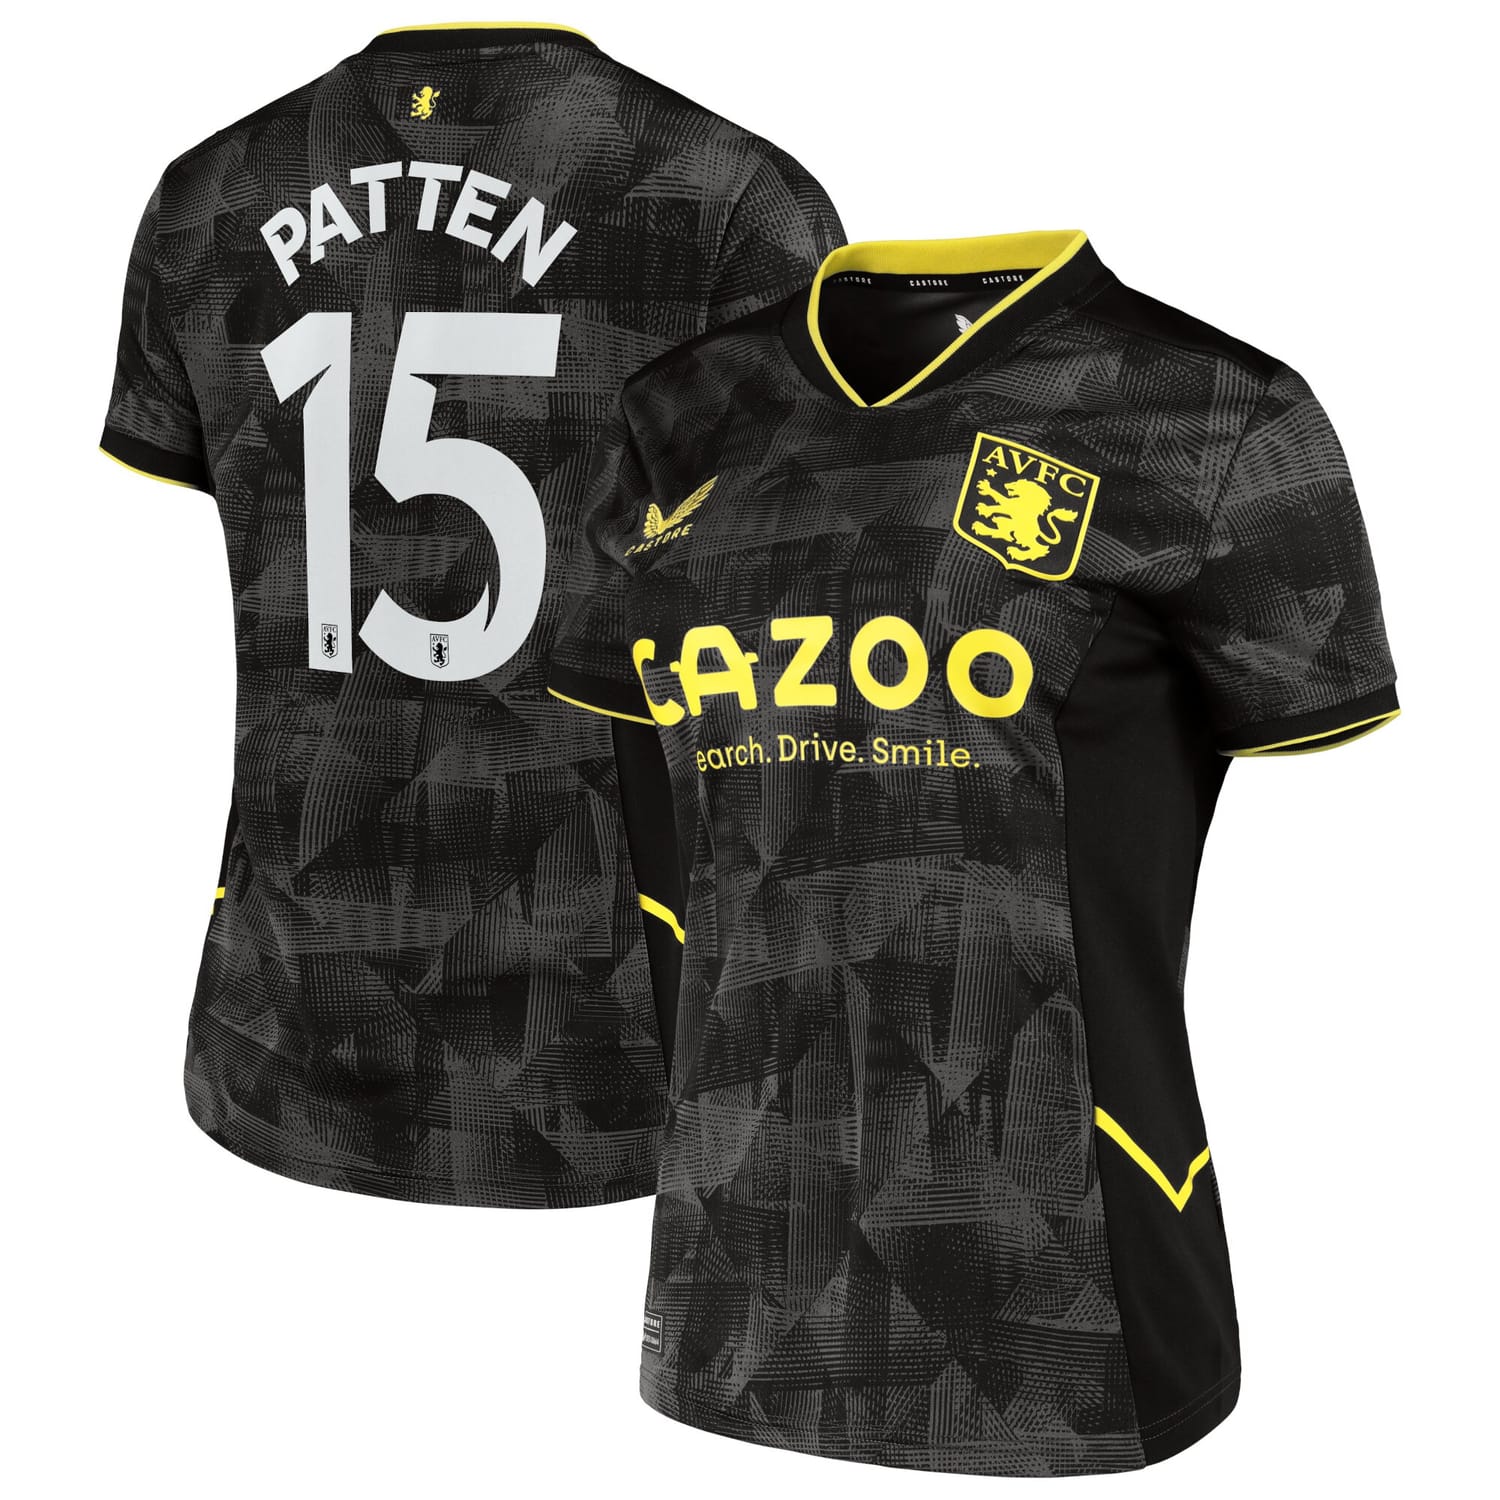 Premier League Aston Villa Third Cup Jersey Shirt 2022-23 player Anna Patten 15 printing for Women